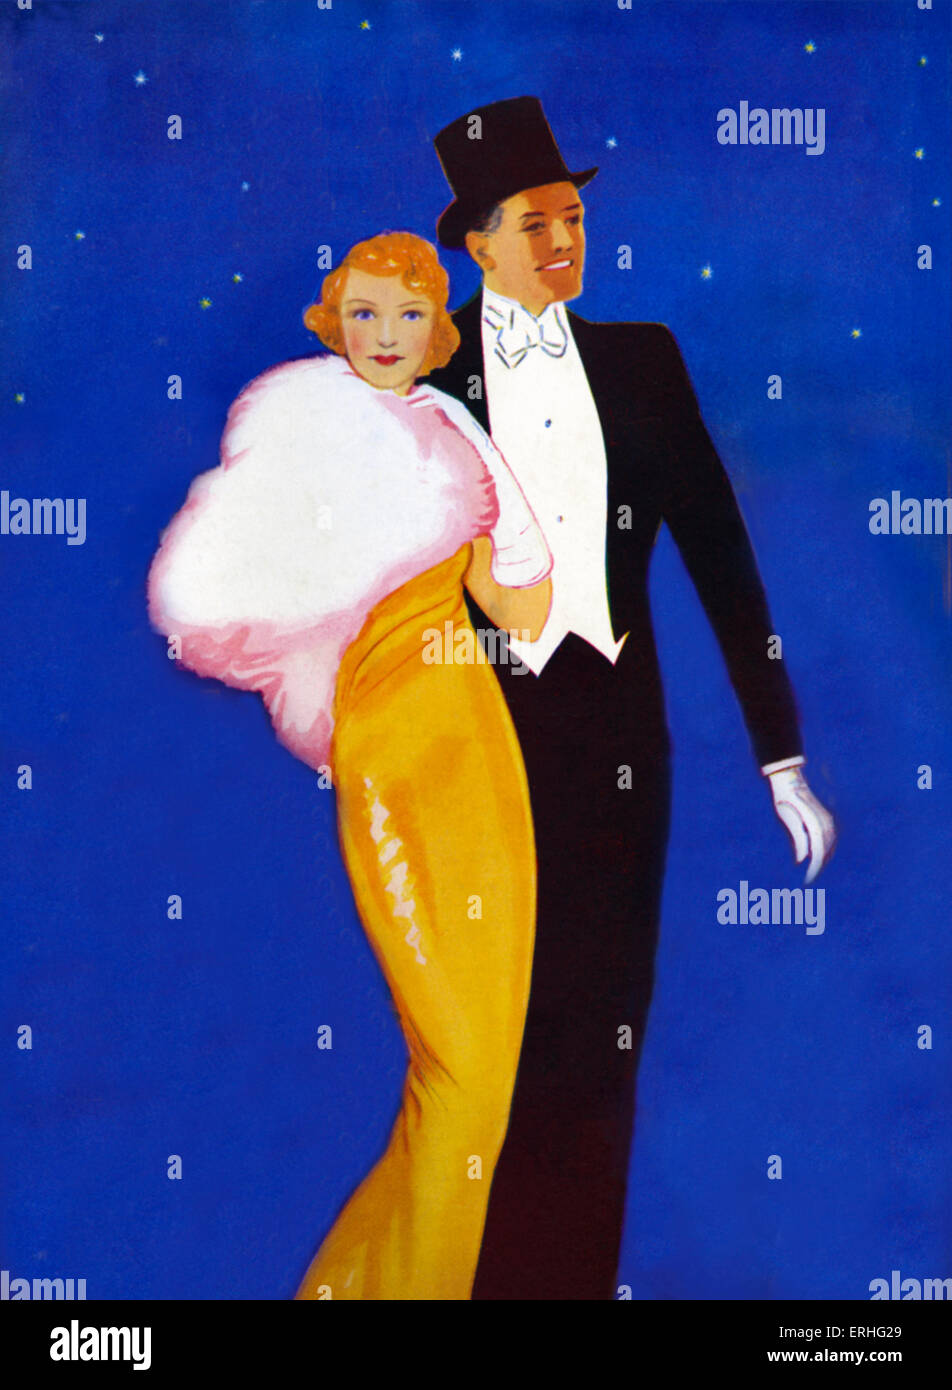 1930 couple en tenue de soirée sur la ville. Haut de forme, robe jaune avec cape de fourrure blanche et ciel bleu nuit avec des étoiles. Gants blancs, robe de soirée. Banque D'Images